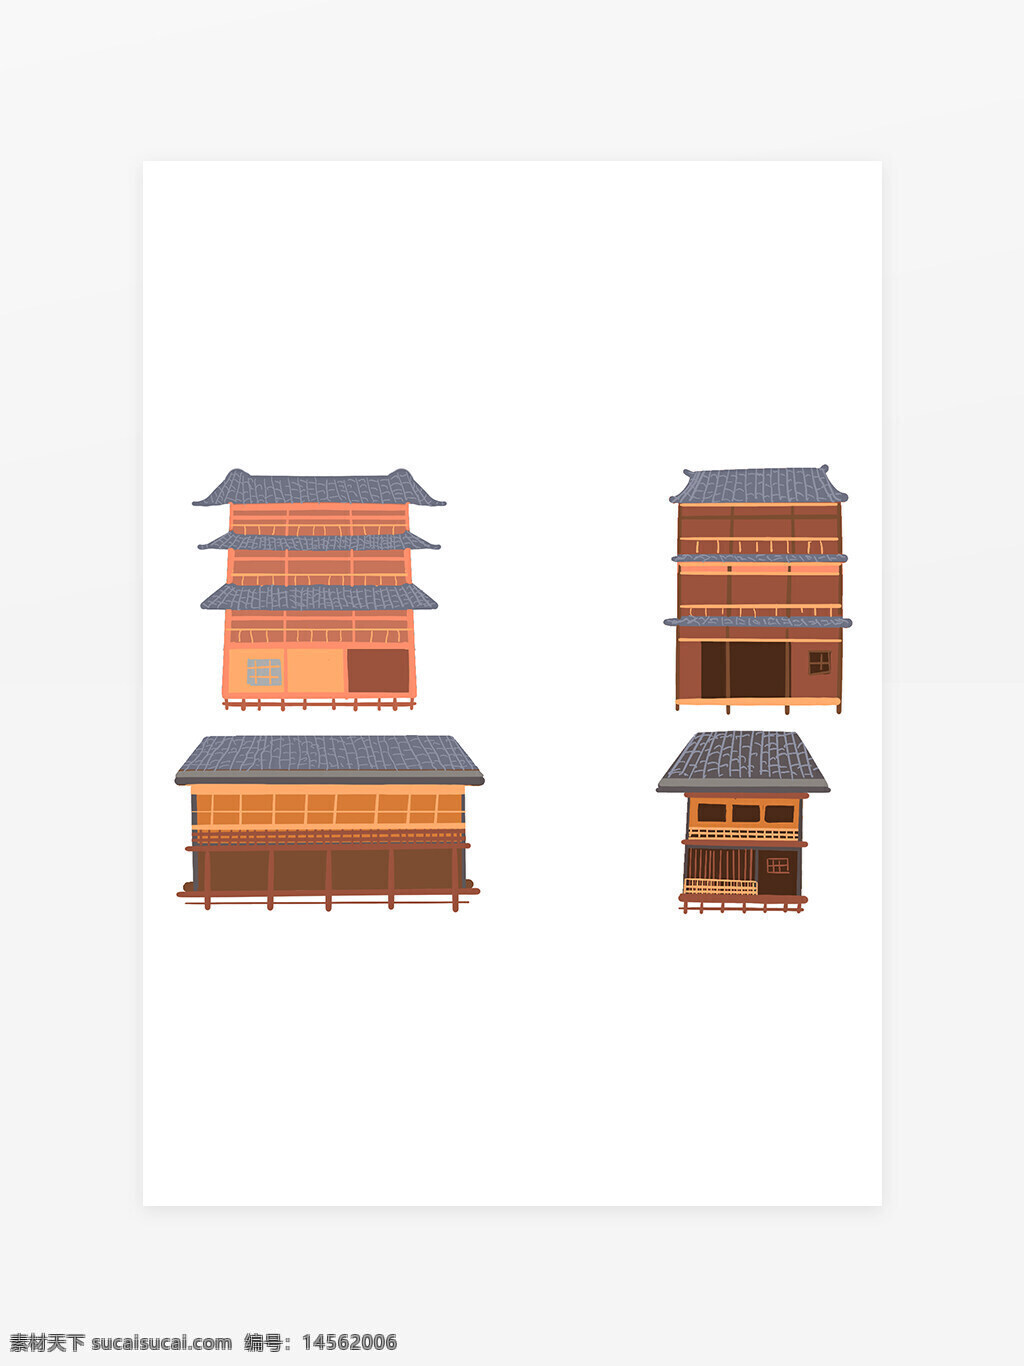 苗寨 少数民族 建筑 房子 卡通 风土 特色